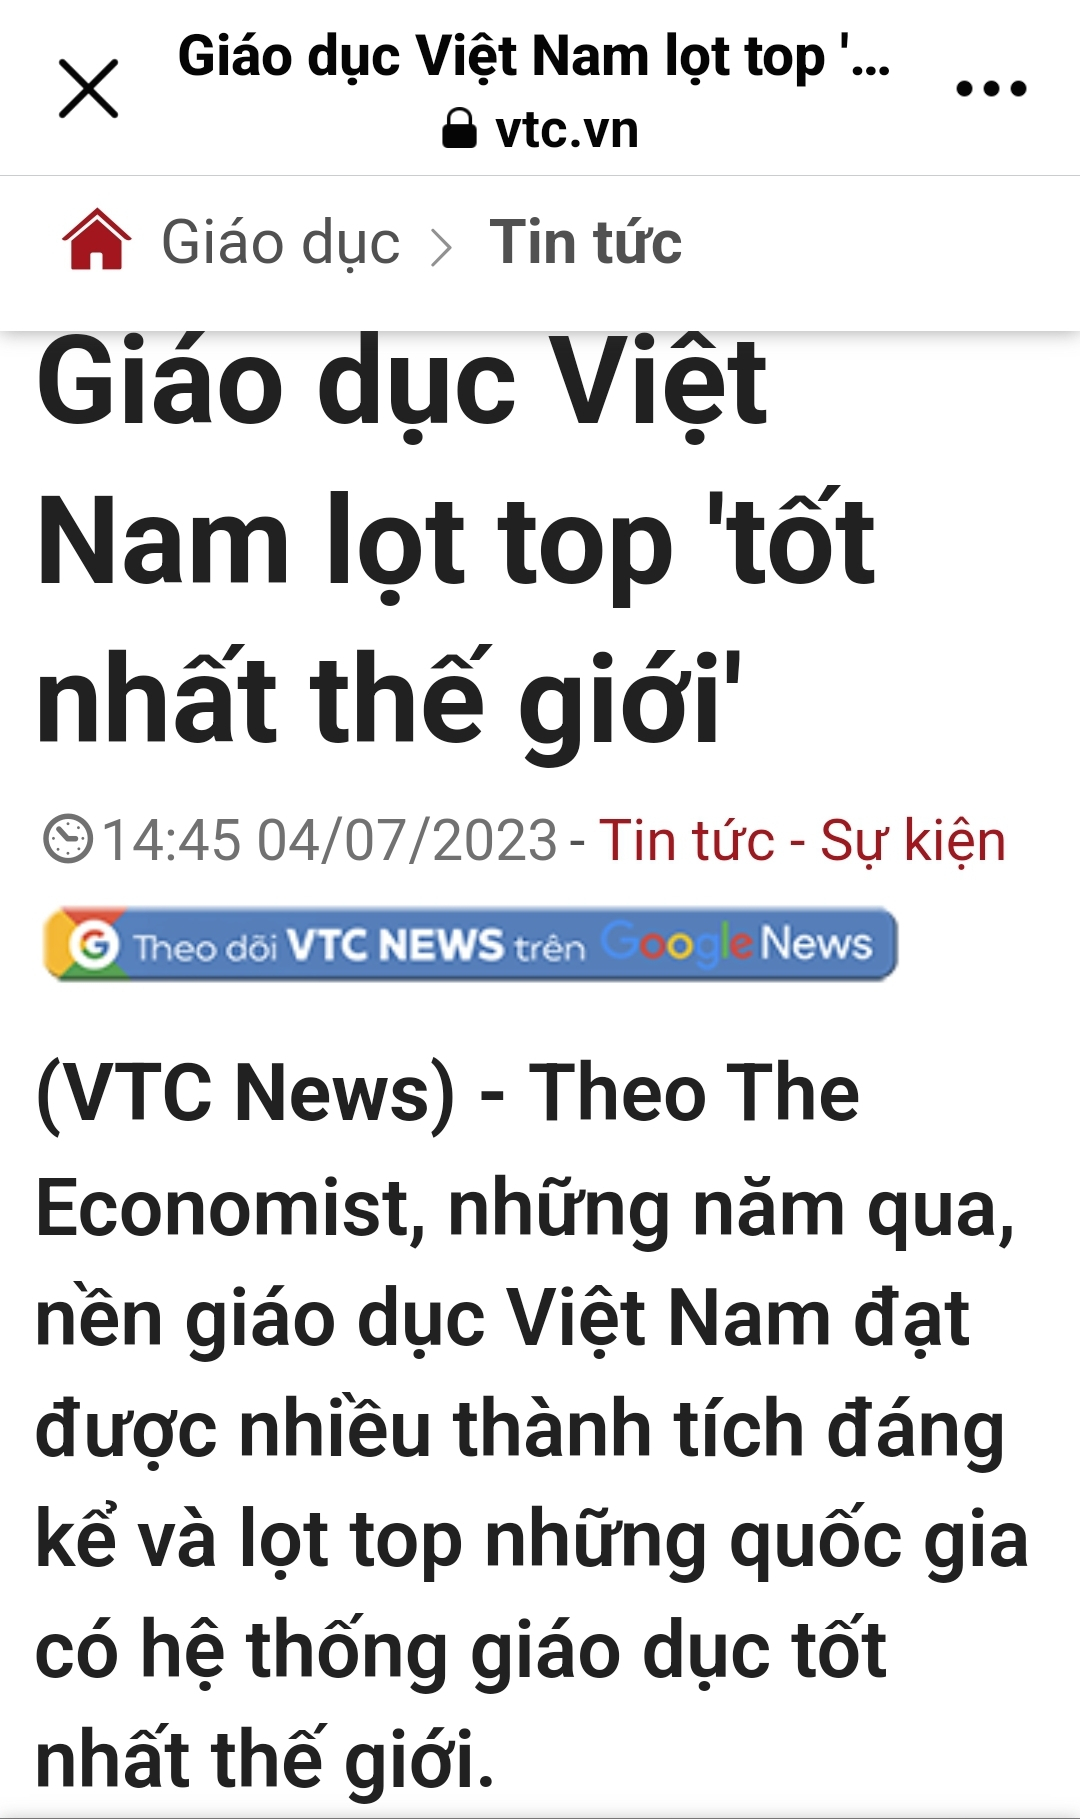 Giáo dục Việt Nam tốt nhất thế giới?  Screen72